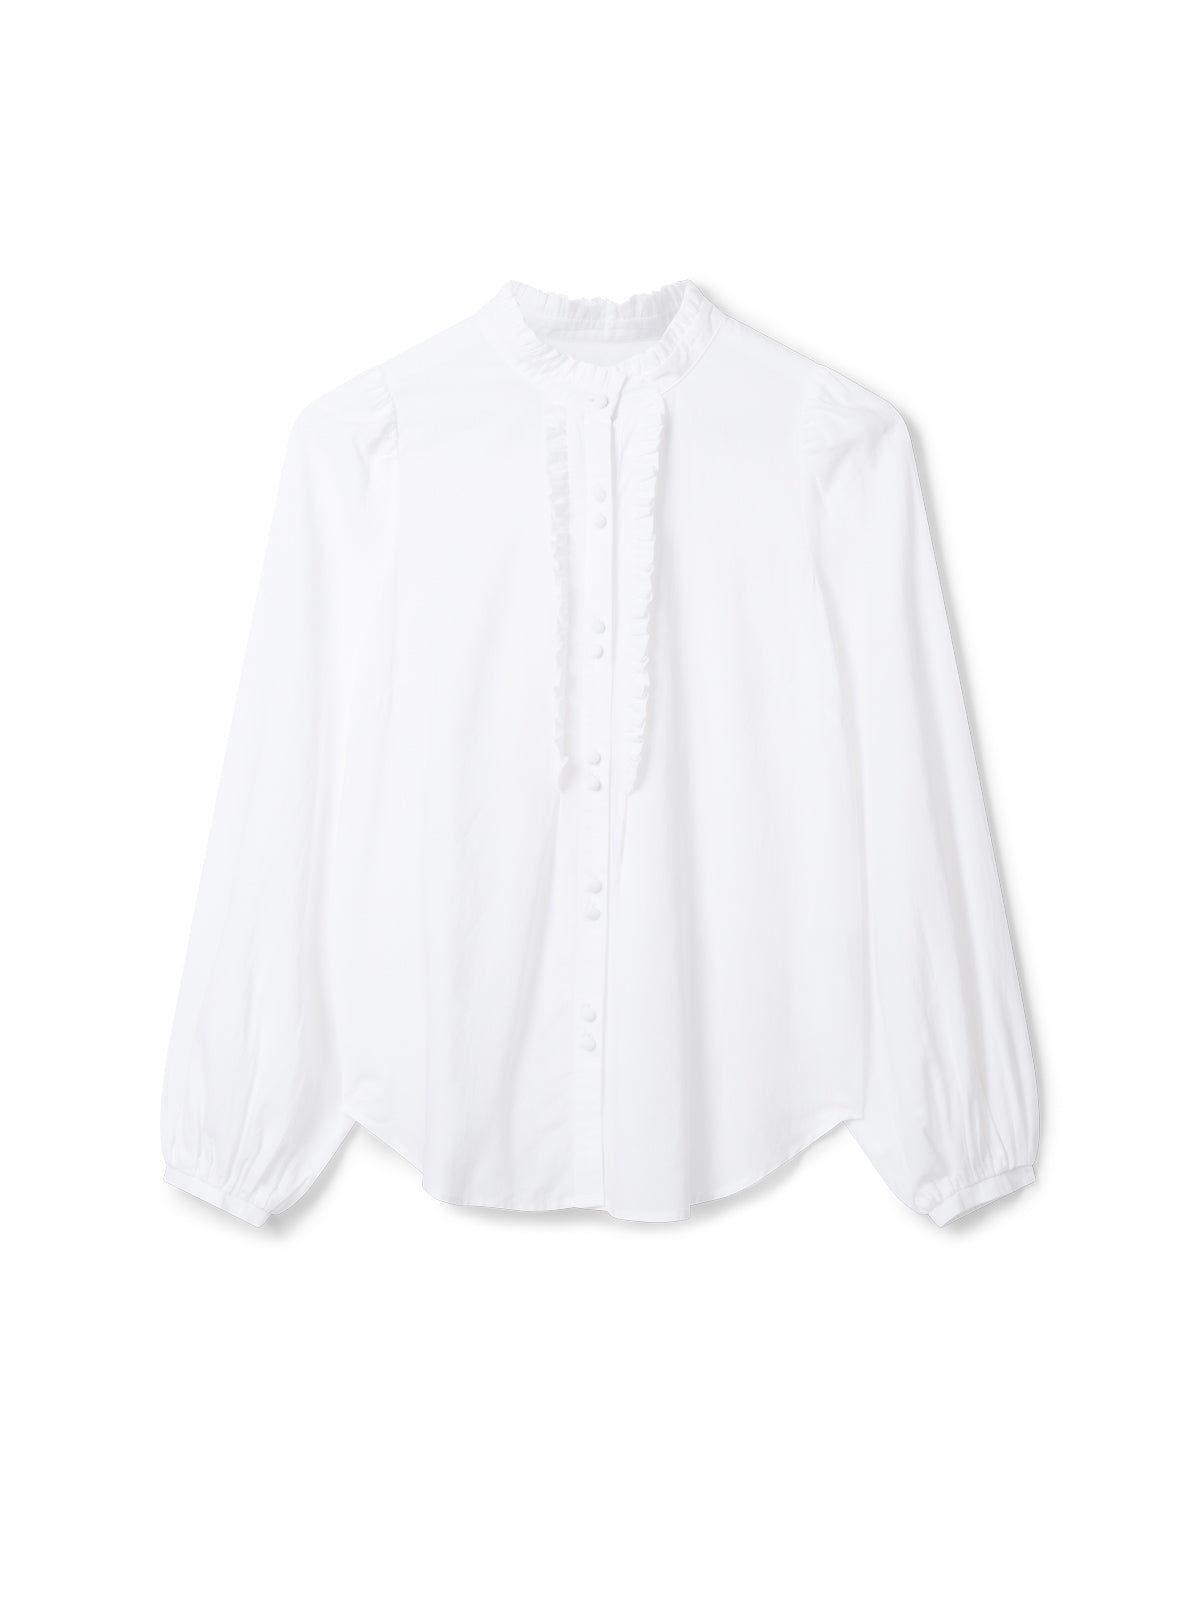 Bijou Organic Cotton Modal Shirt - White